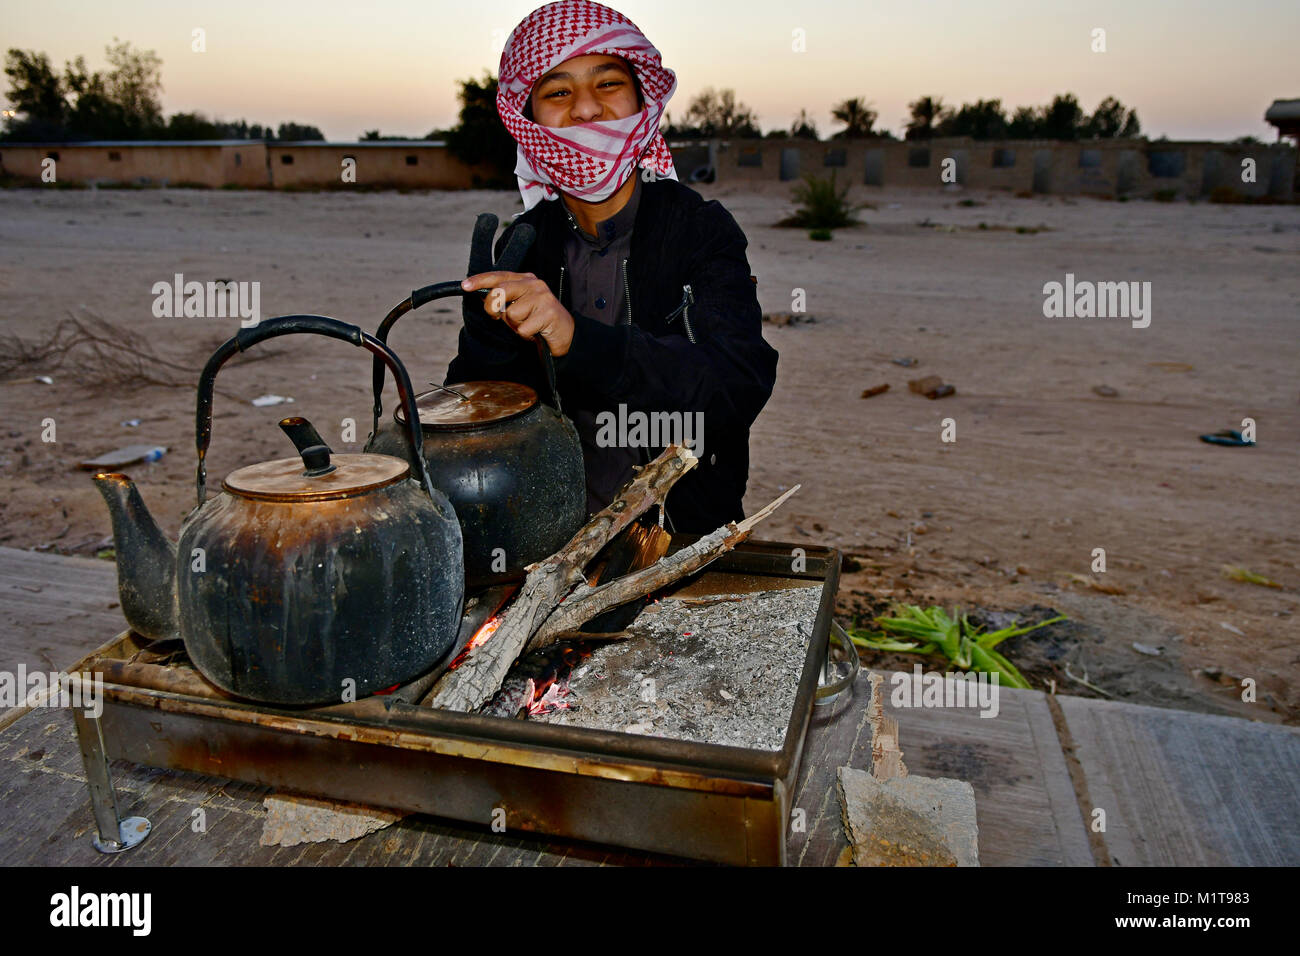 Gli arabi i ragazzi sono felici di essere fotografati in strada mentre il caffè sul fuoco a legna. Foto Stock